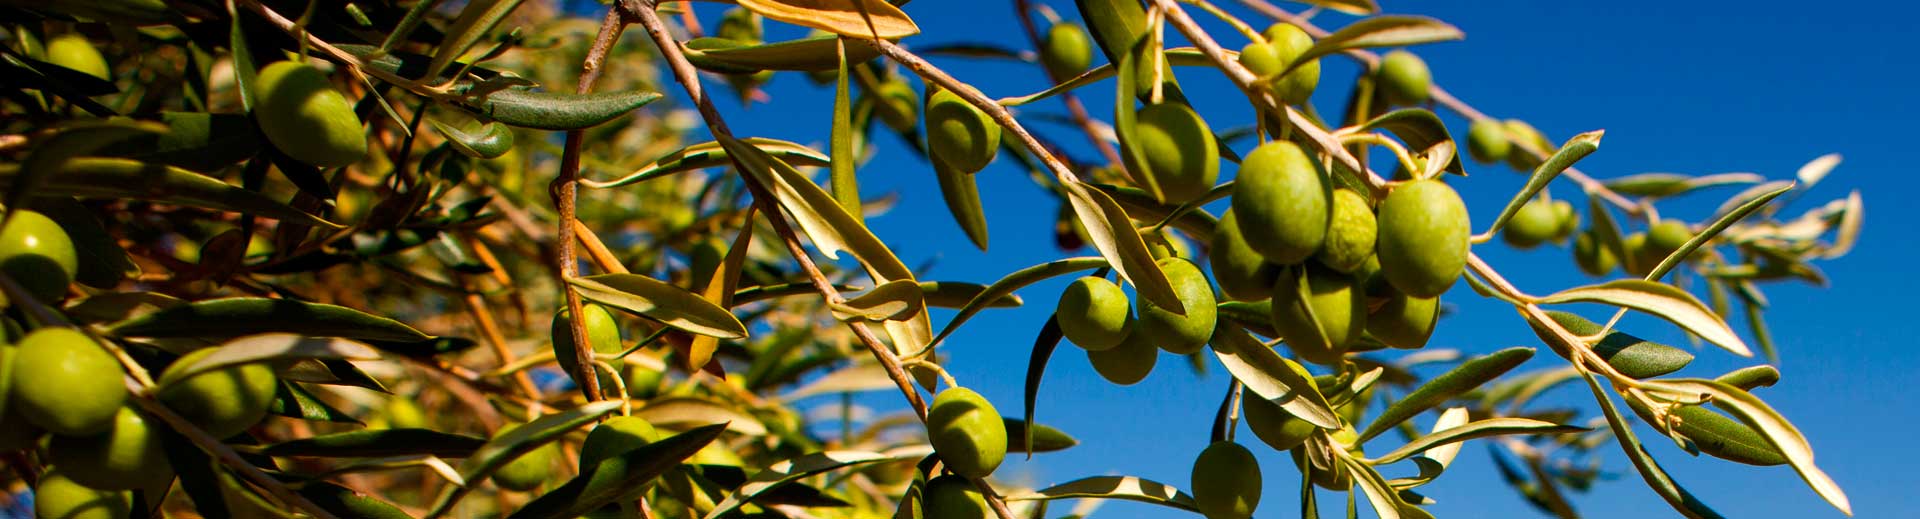 Nutrición vegetal en cultivo de olivo